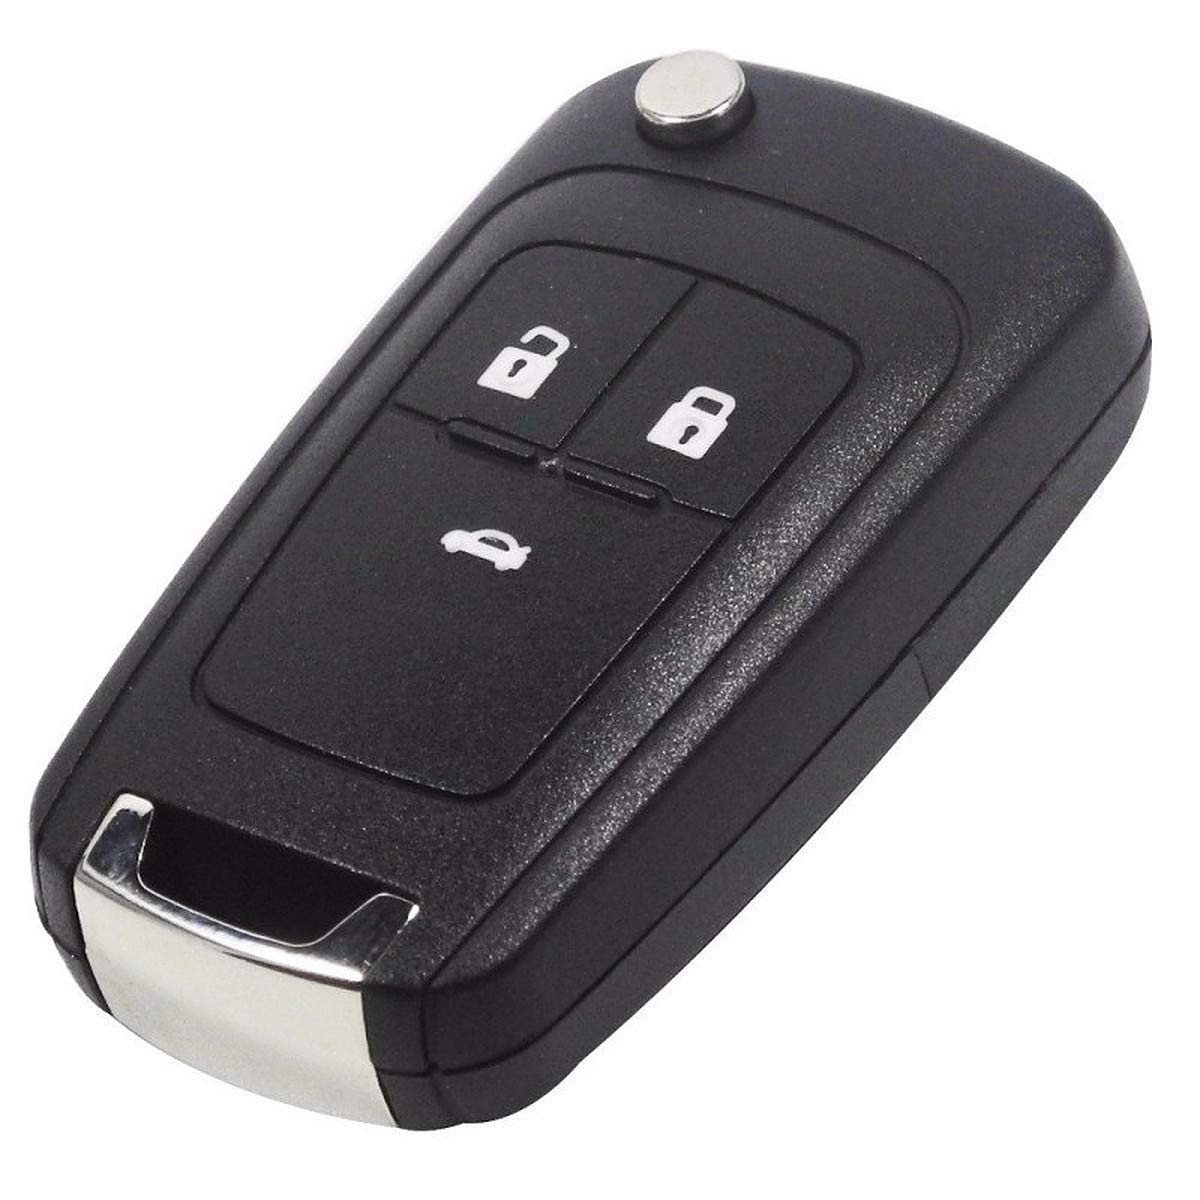 Autoschlüssel Hülle Schlüssel Gehäuse Fernbedienung Kompatibel mit Opel Autoschlüsseln Funkschlüssel 3 Tasten für Chevrolet Cruze - Aveo - Insignia - Spark - Captiva - Matiz - Orlando von SALPIE